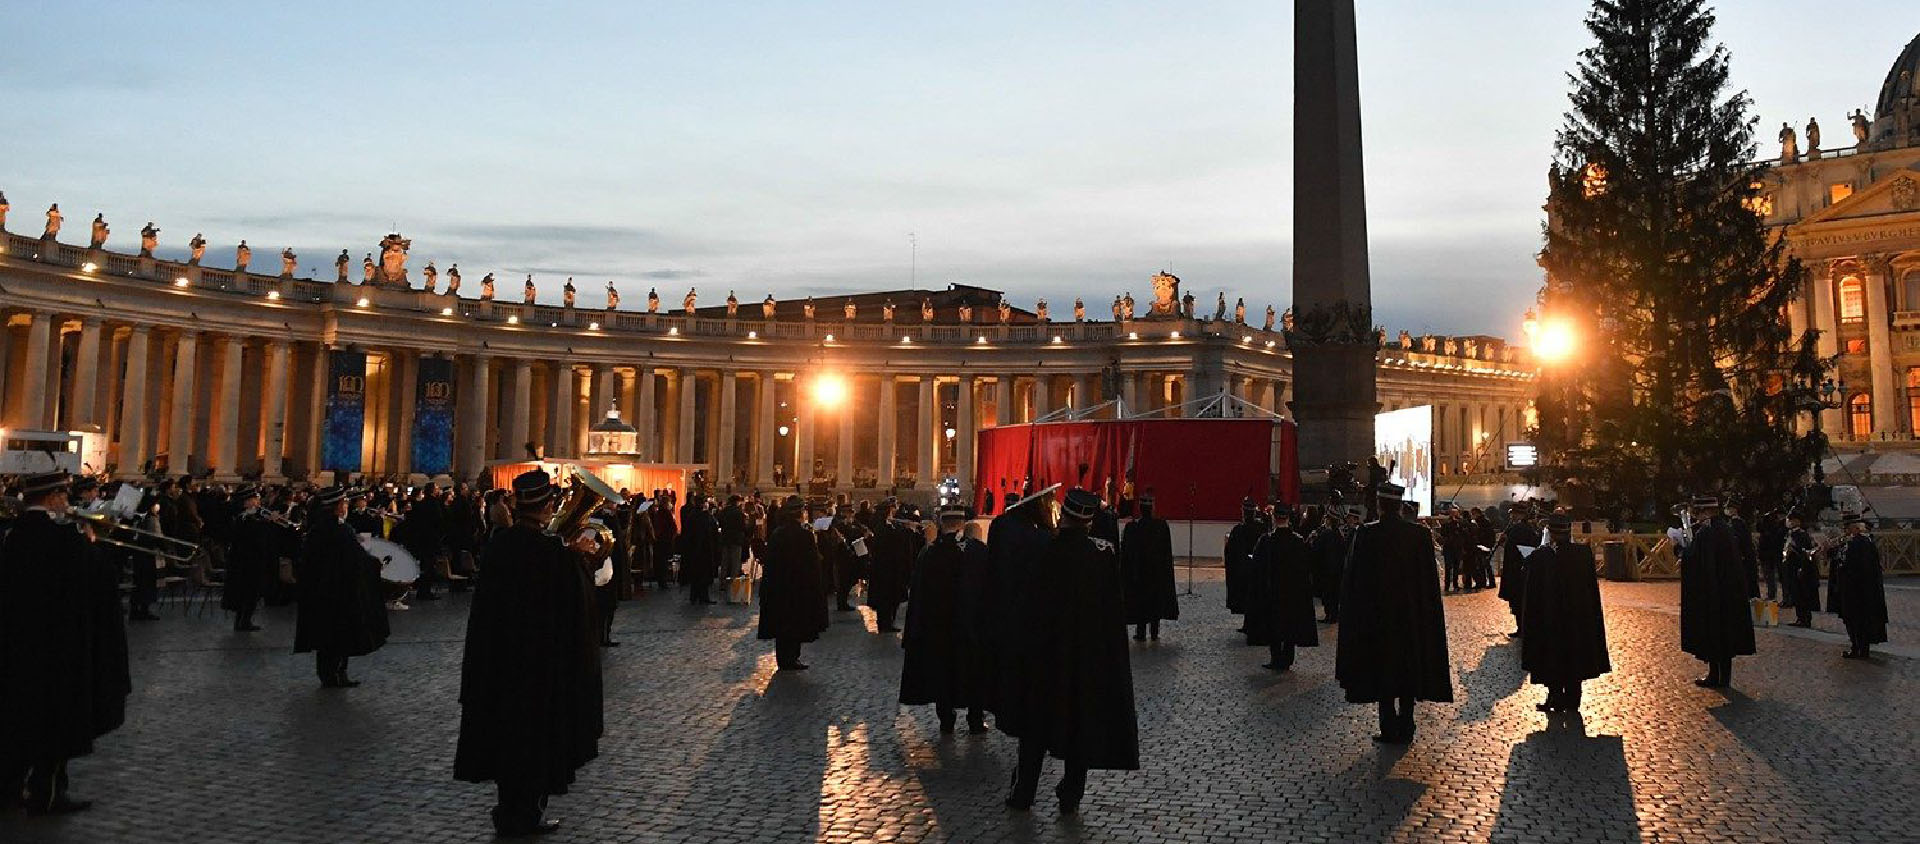 La crèche et l'arbre de Noël seront offciellement inaugurés le 3 décembre prochain, comme ici en 2020 | © Vatican News.